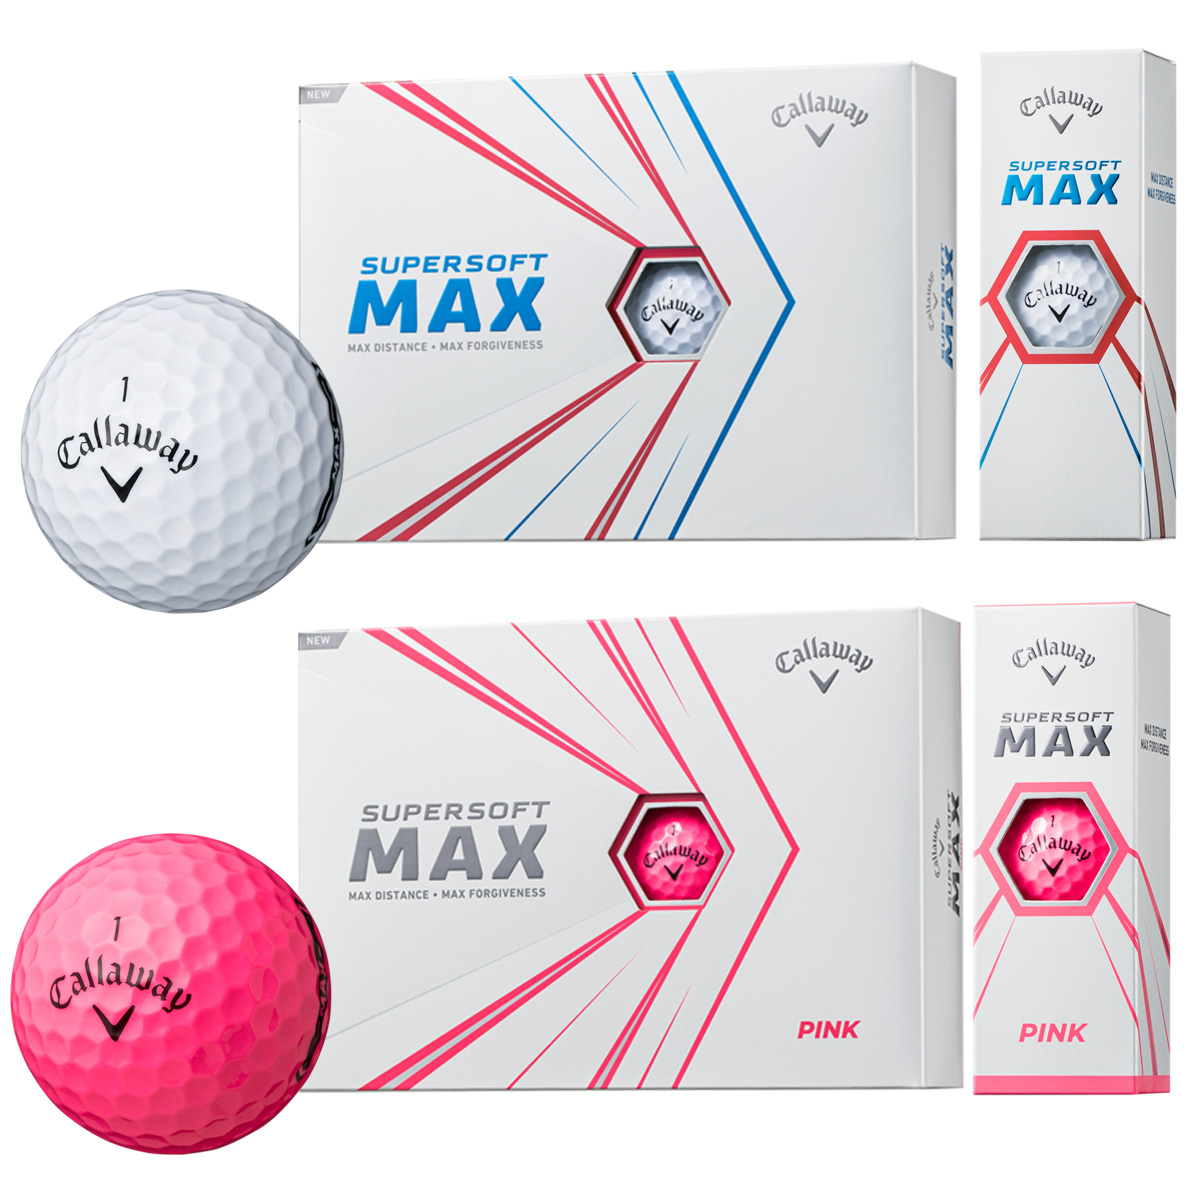 大きなサイズだから打ちやすさもマックス Callaway アイテム勢ぞろい キャロウェイ 日本正規品 税込 SUPER SOFT 2021新製品 ゴルフボール1ダース MAX 12個入 あす楽対応 スーパーソフトマックス